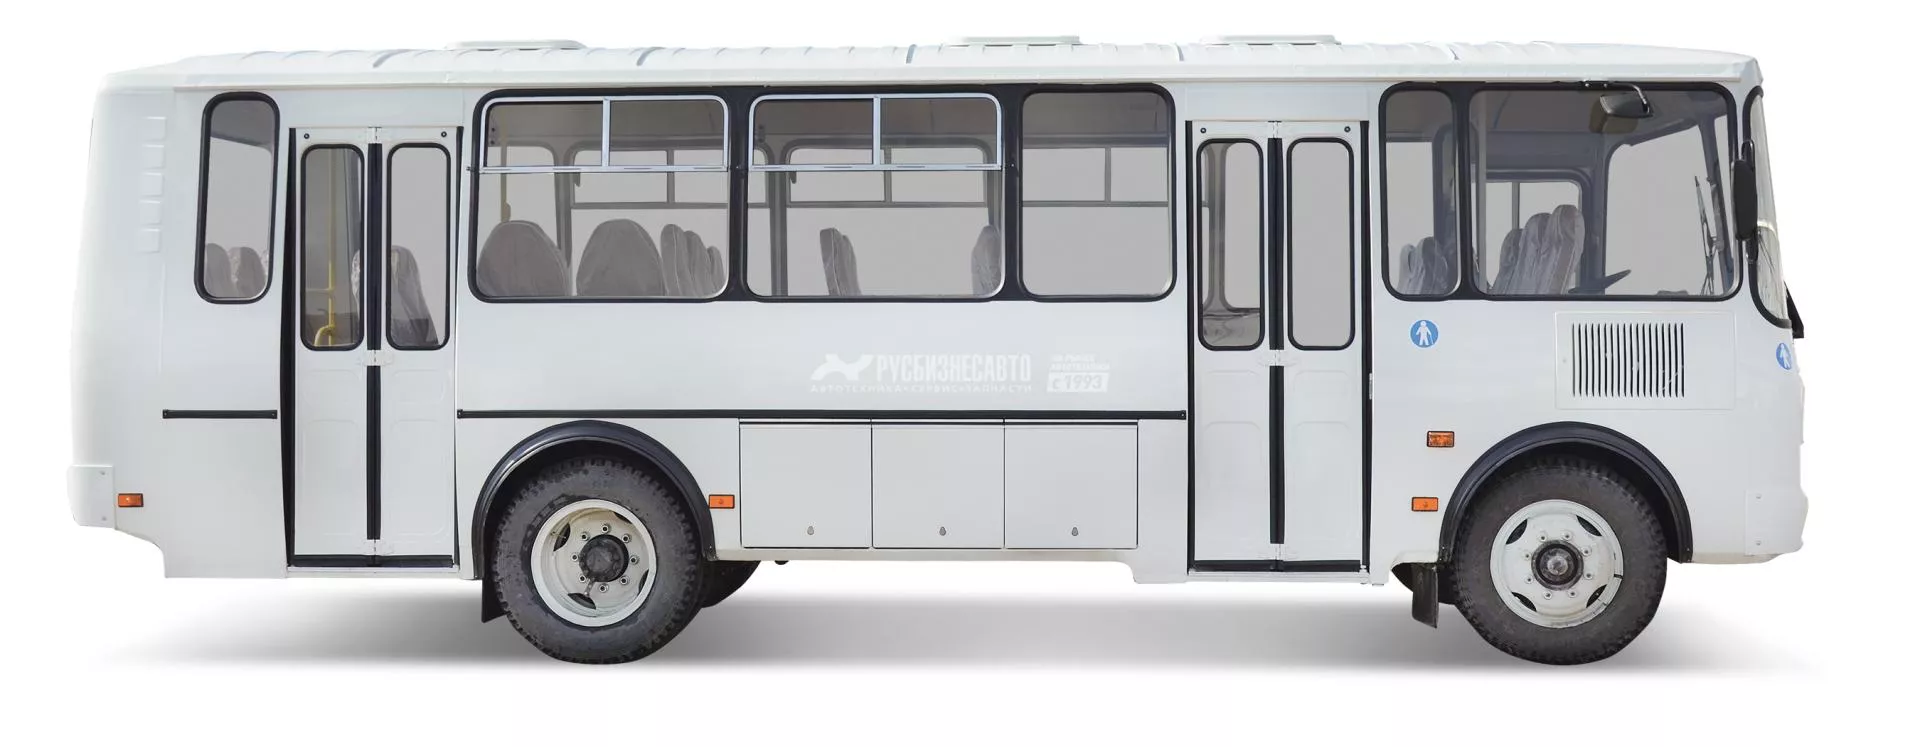 Купить автобус ПАЗ 05 - цена, характеристики - купить в Москве